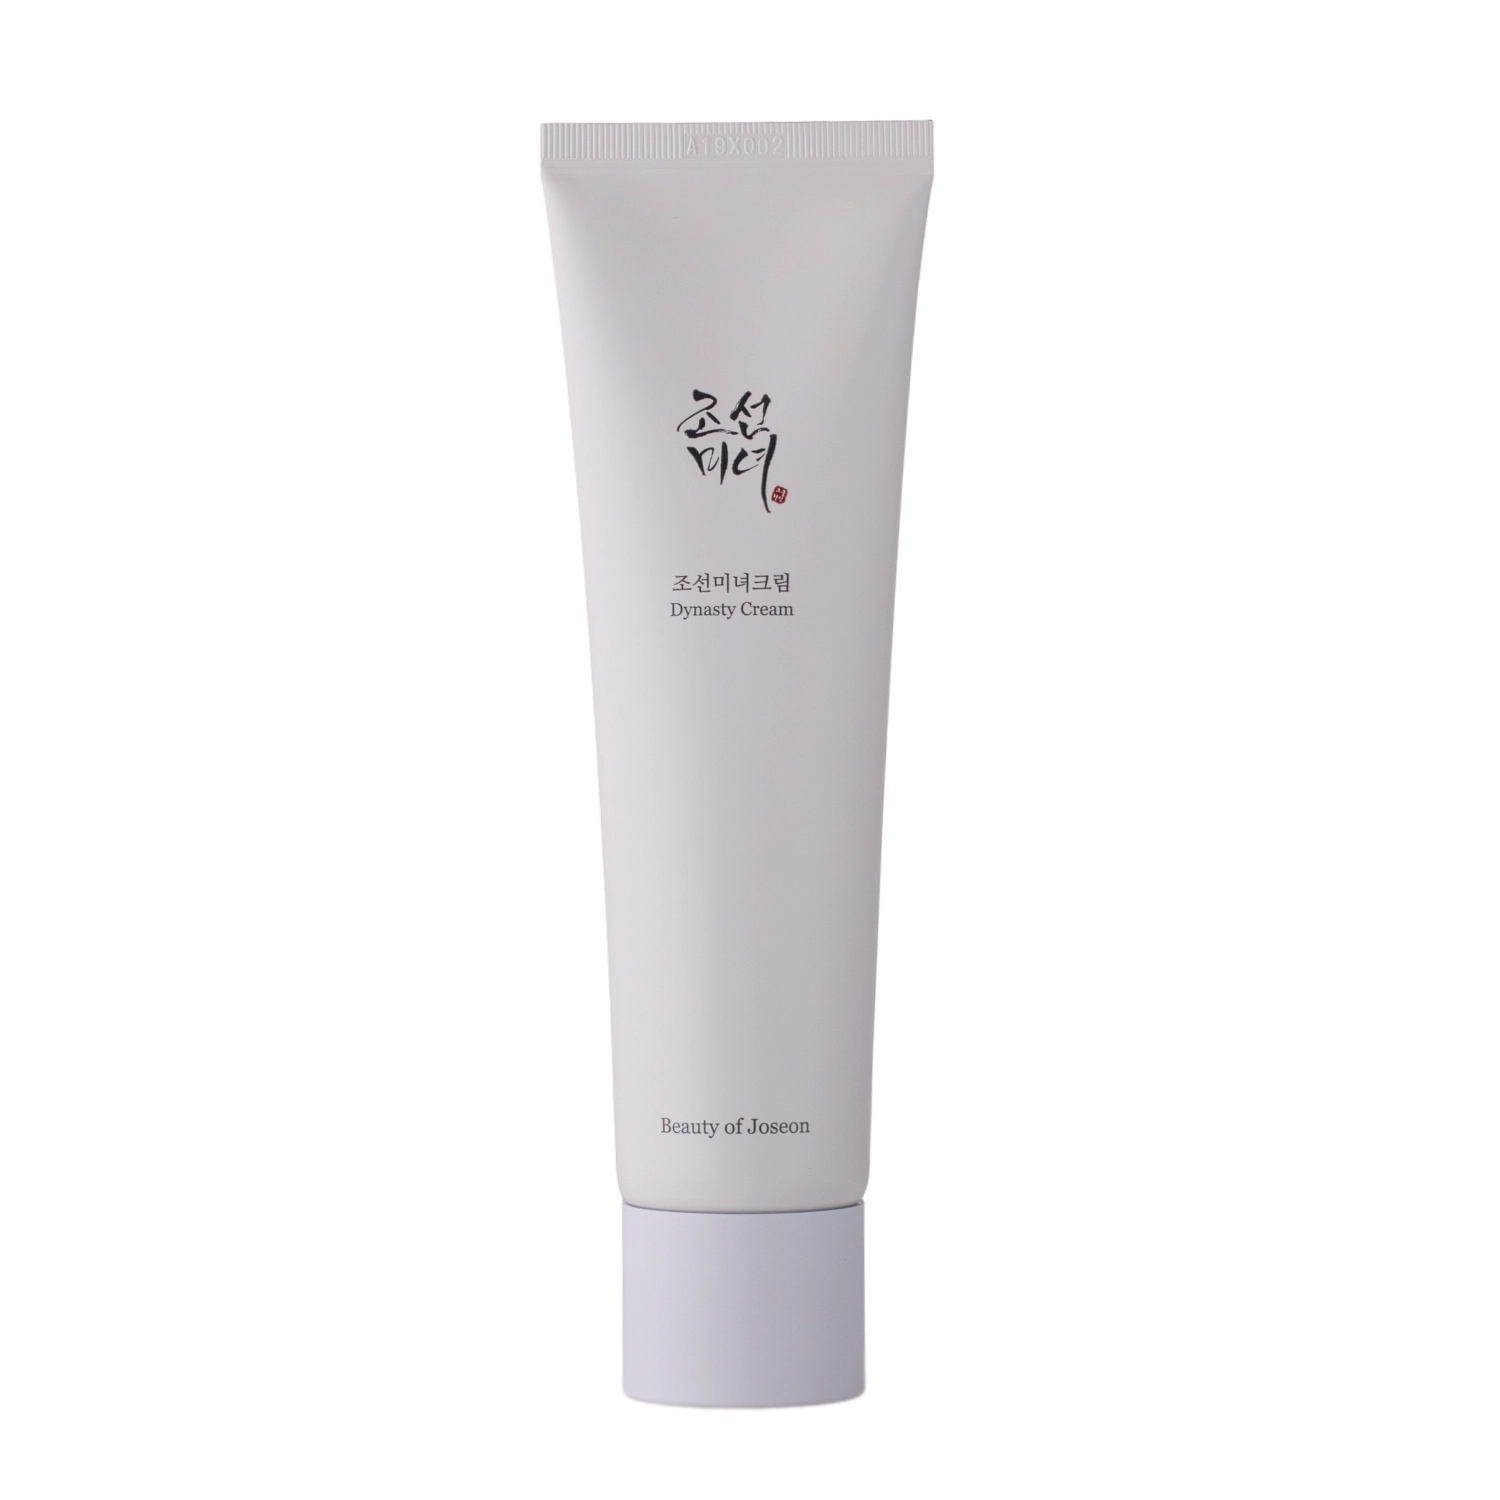 Beauty of Joseon - Dynasty Cream - Зволожувальний крем для обличчя - 100ml